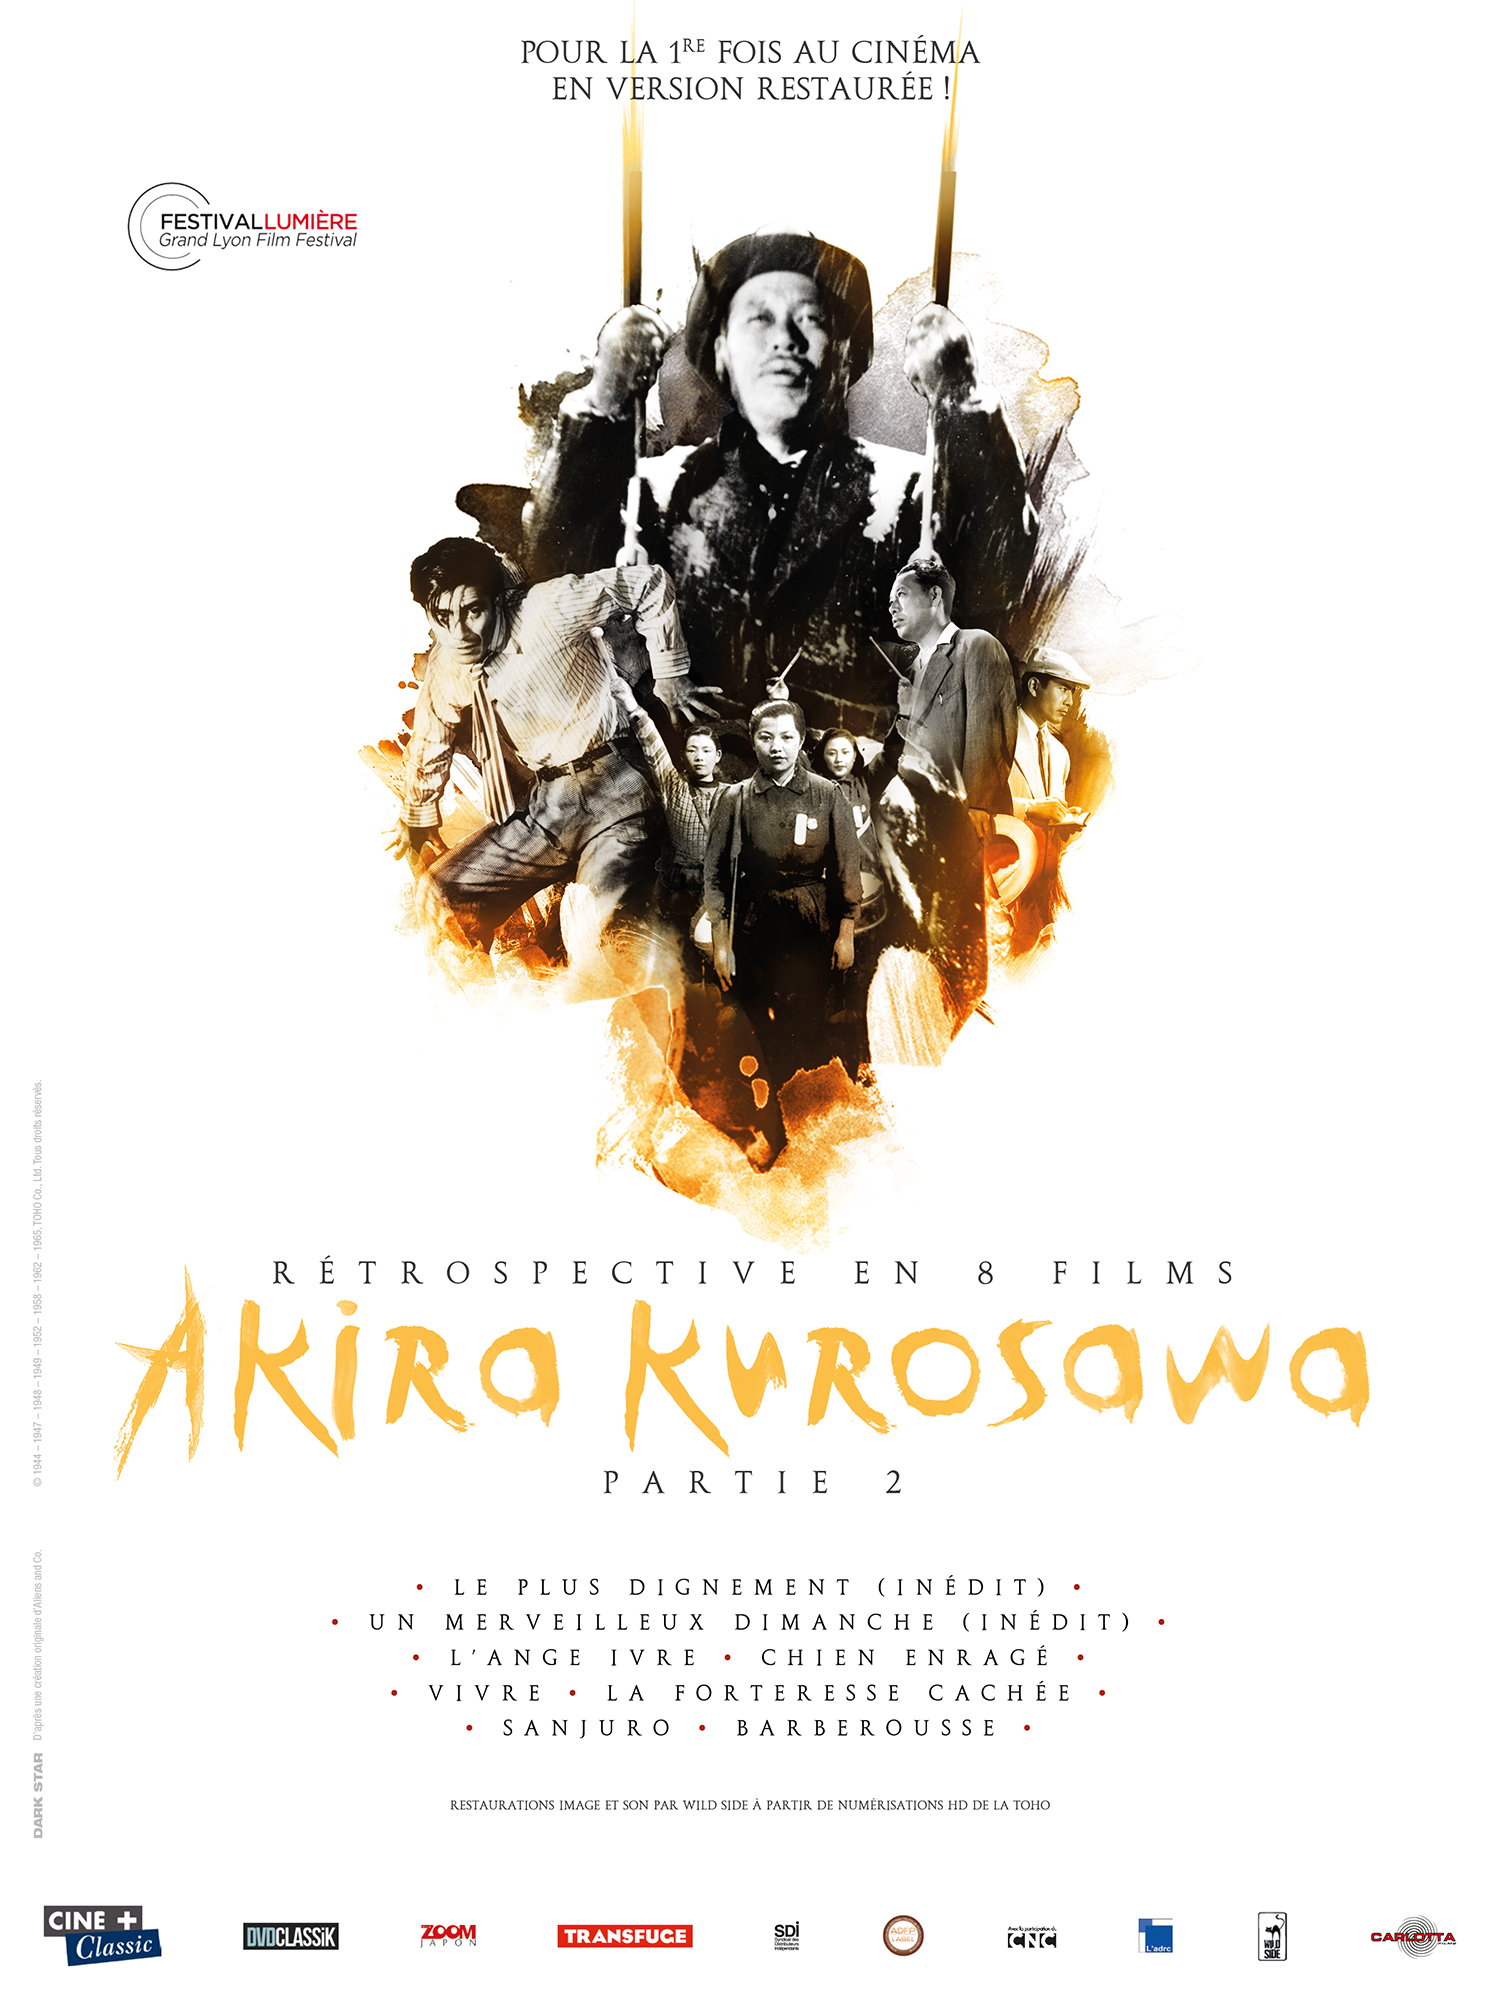 Rétrospective Akira Kurosawa, 2ème vague en salles à partir du 25 janvier.